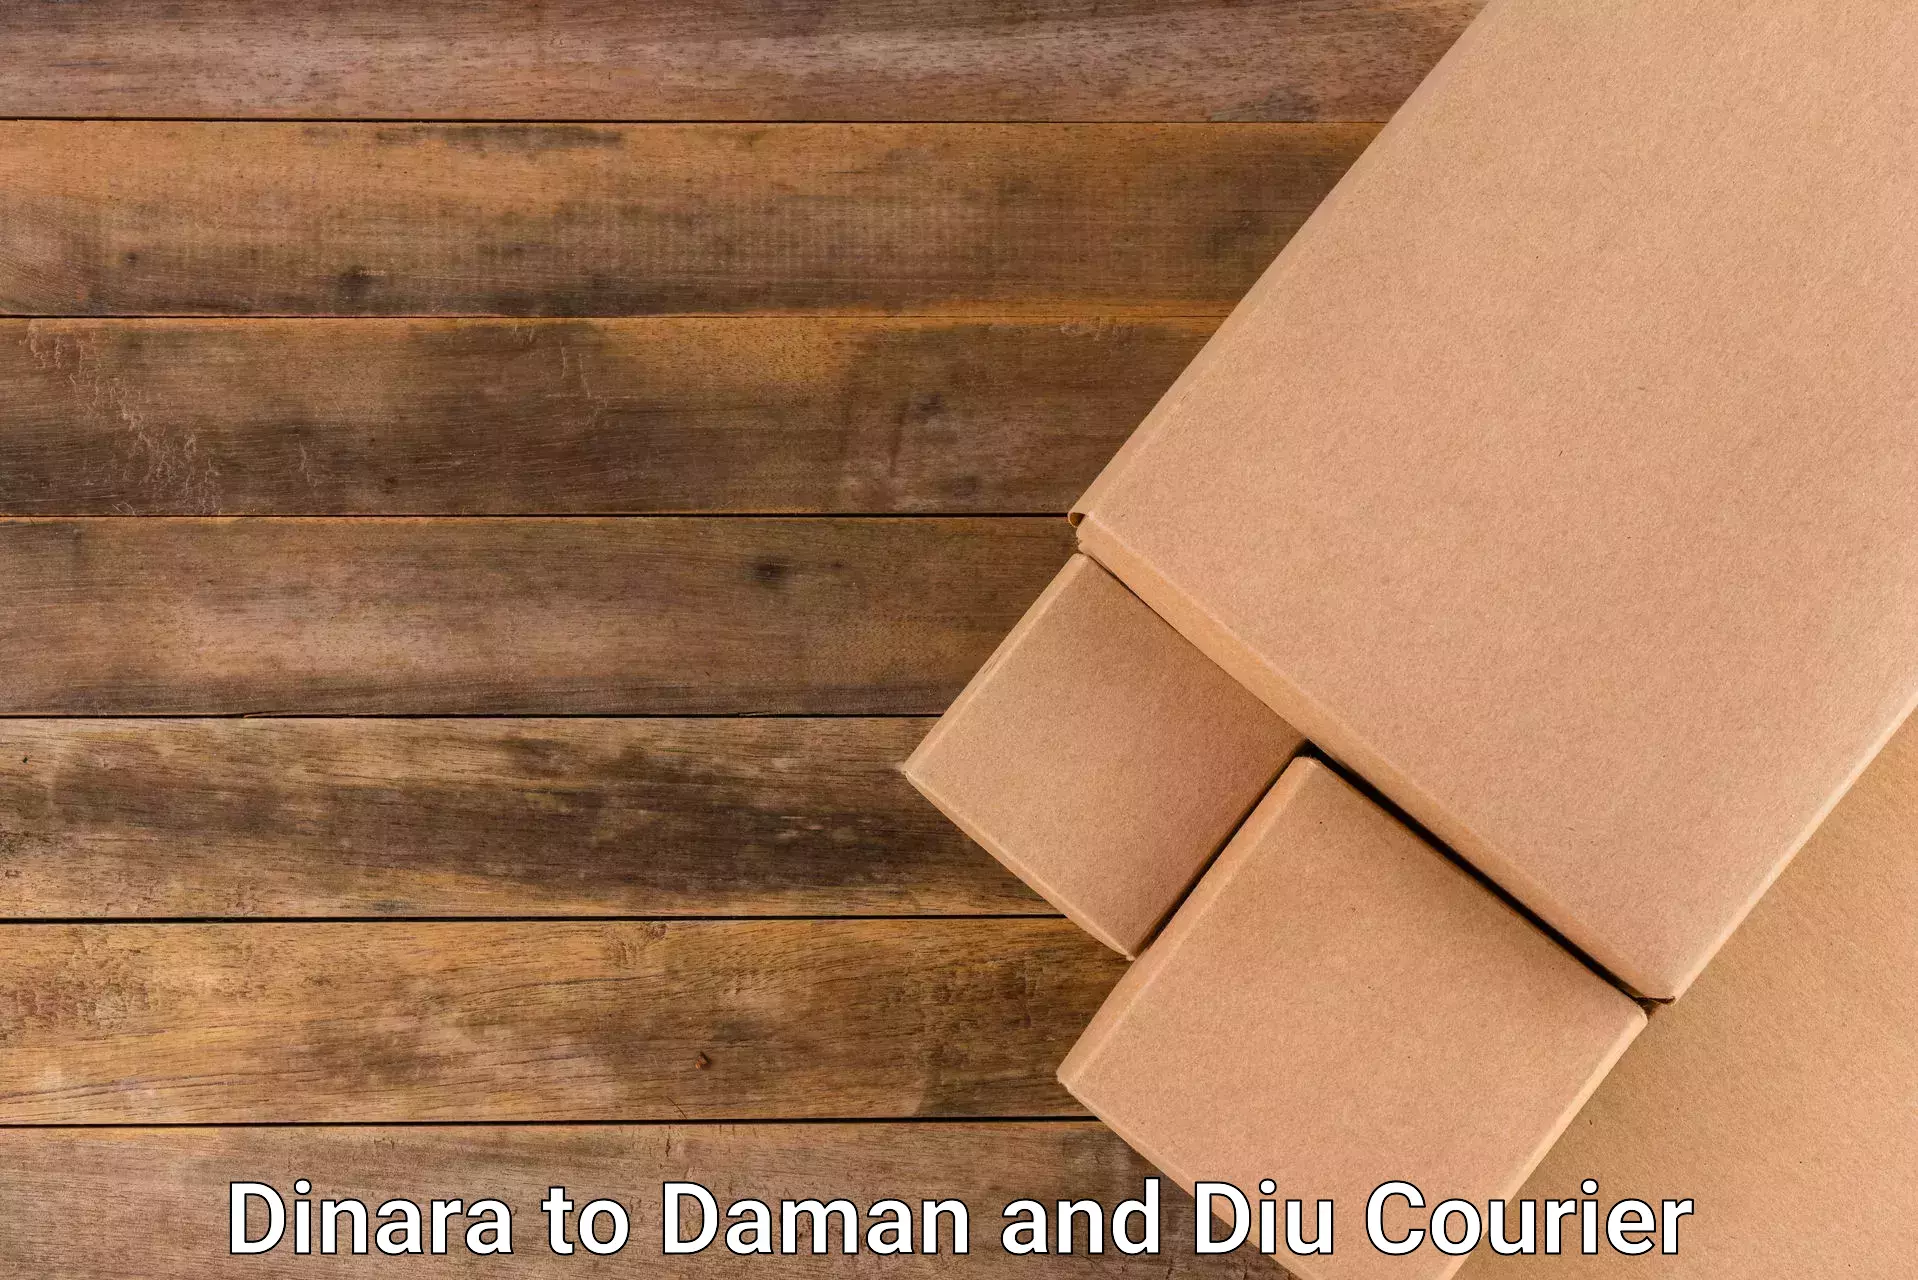 Individual parcel service Dinara to Daman and Diu